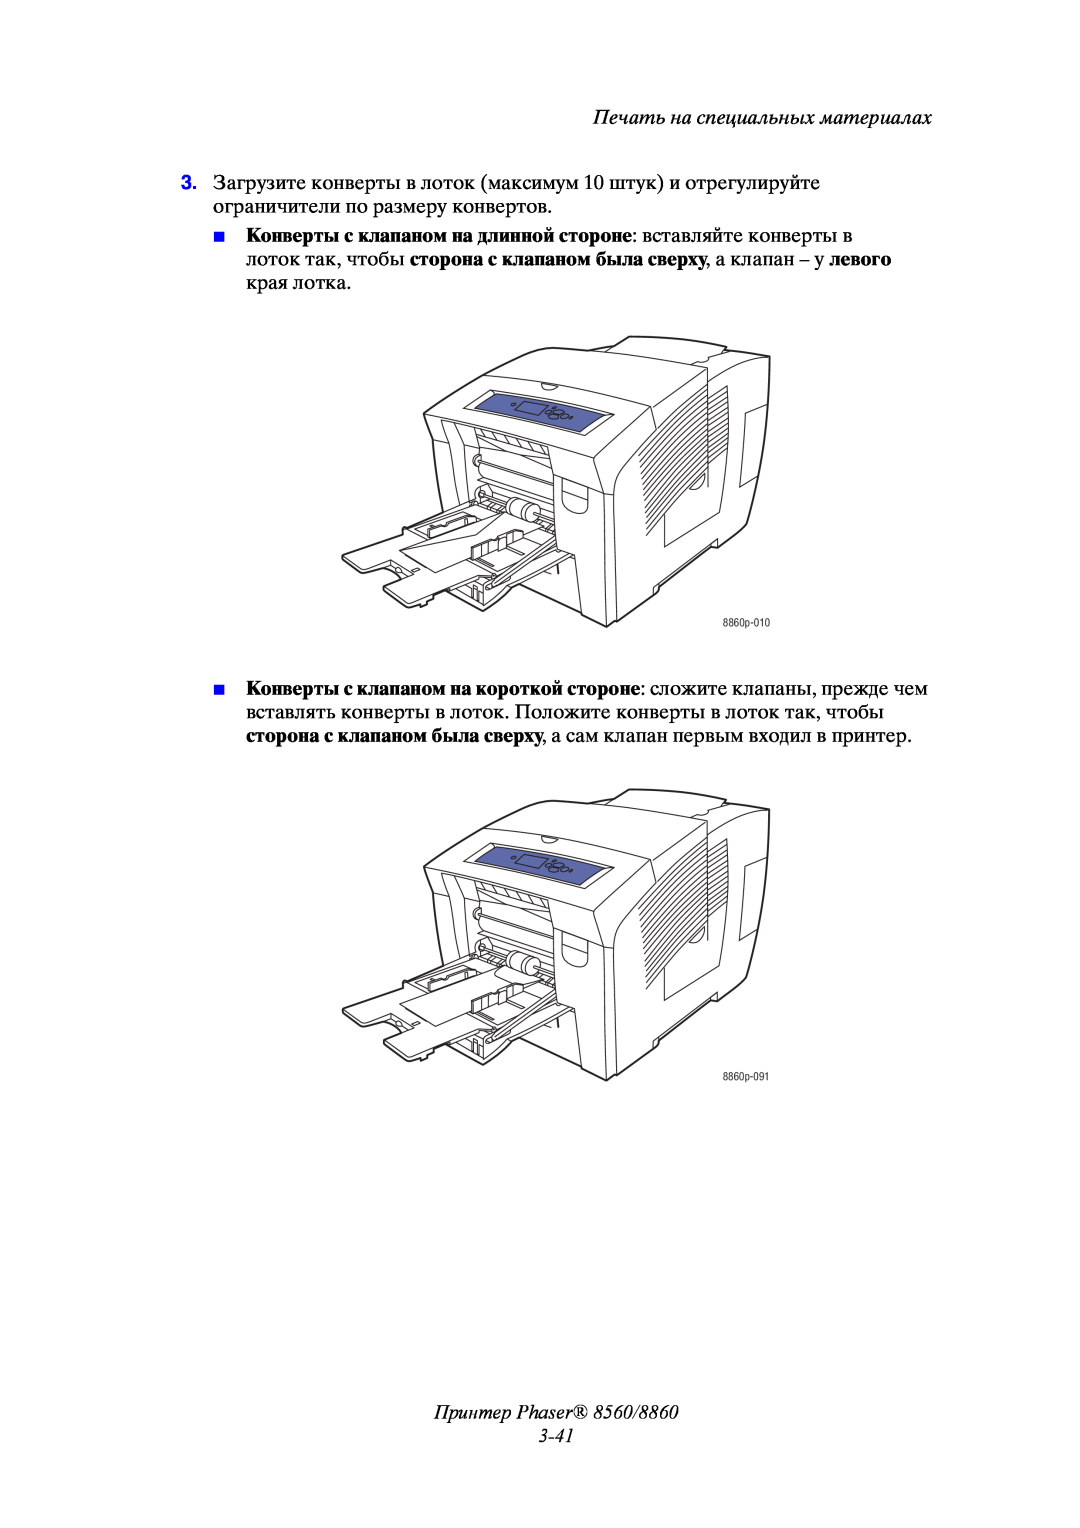 Xerox manual Принтер Phaser 8560/8860 3-41, Печать на специальных материалах 